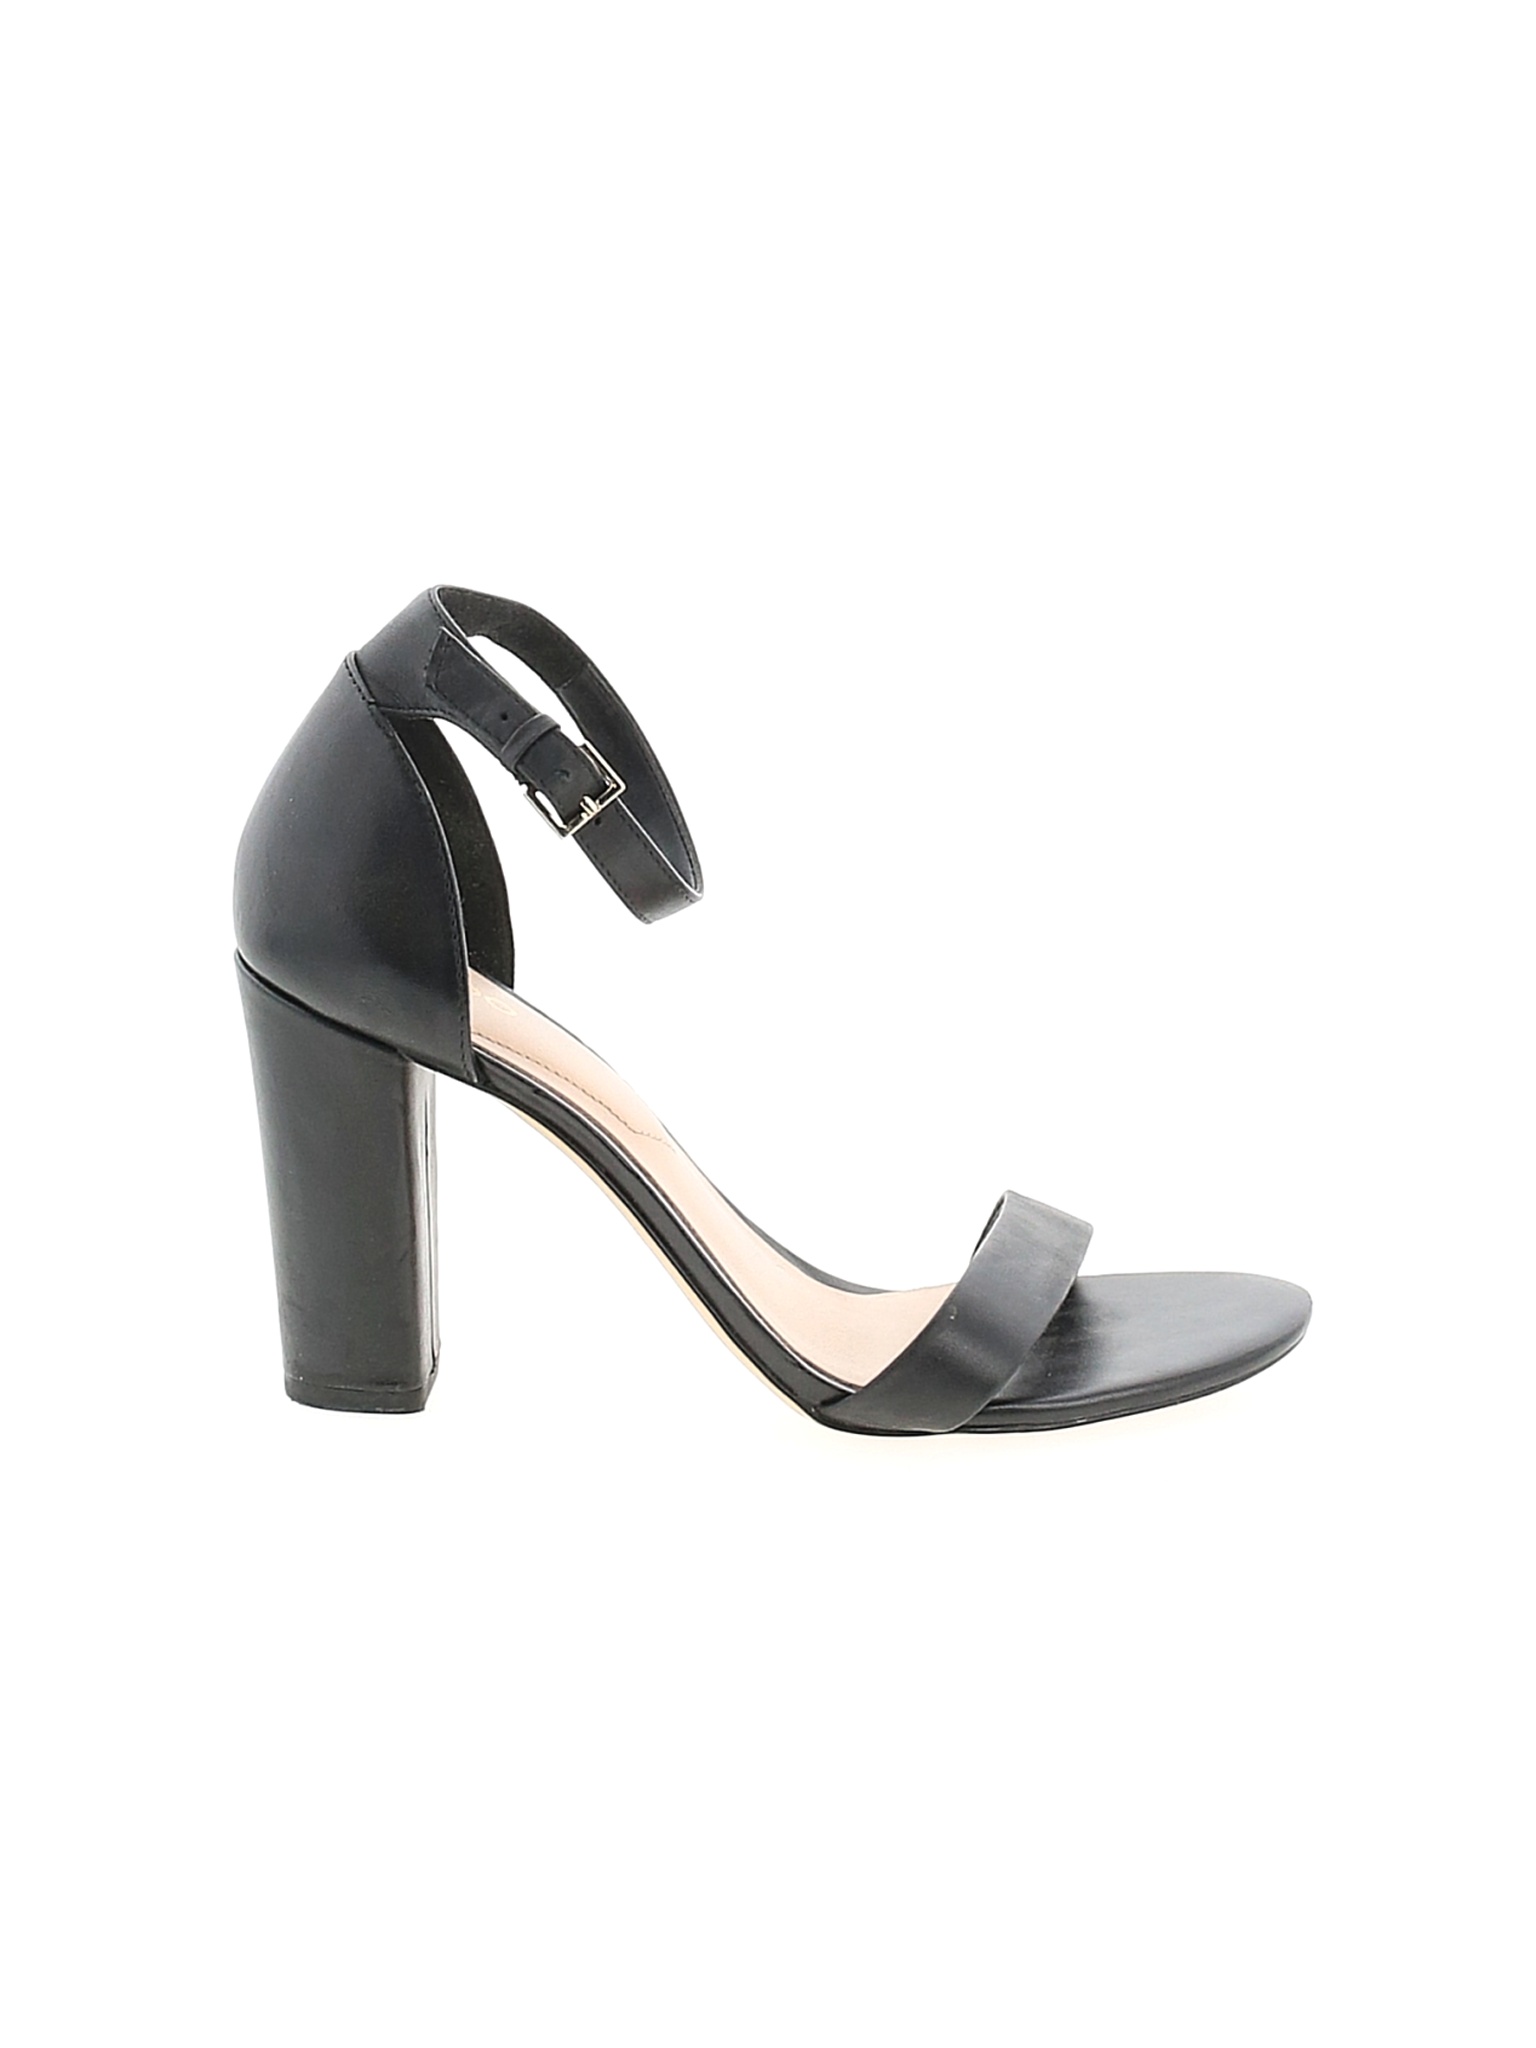 Aldo Women Black Heels US 8 | eBay